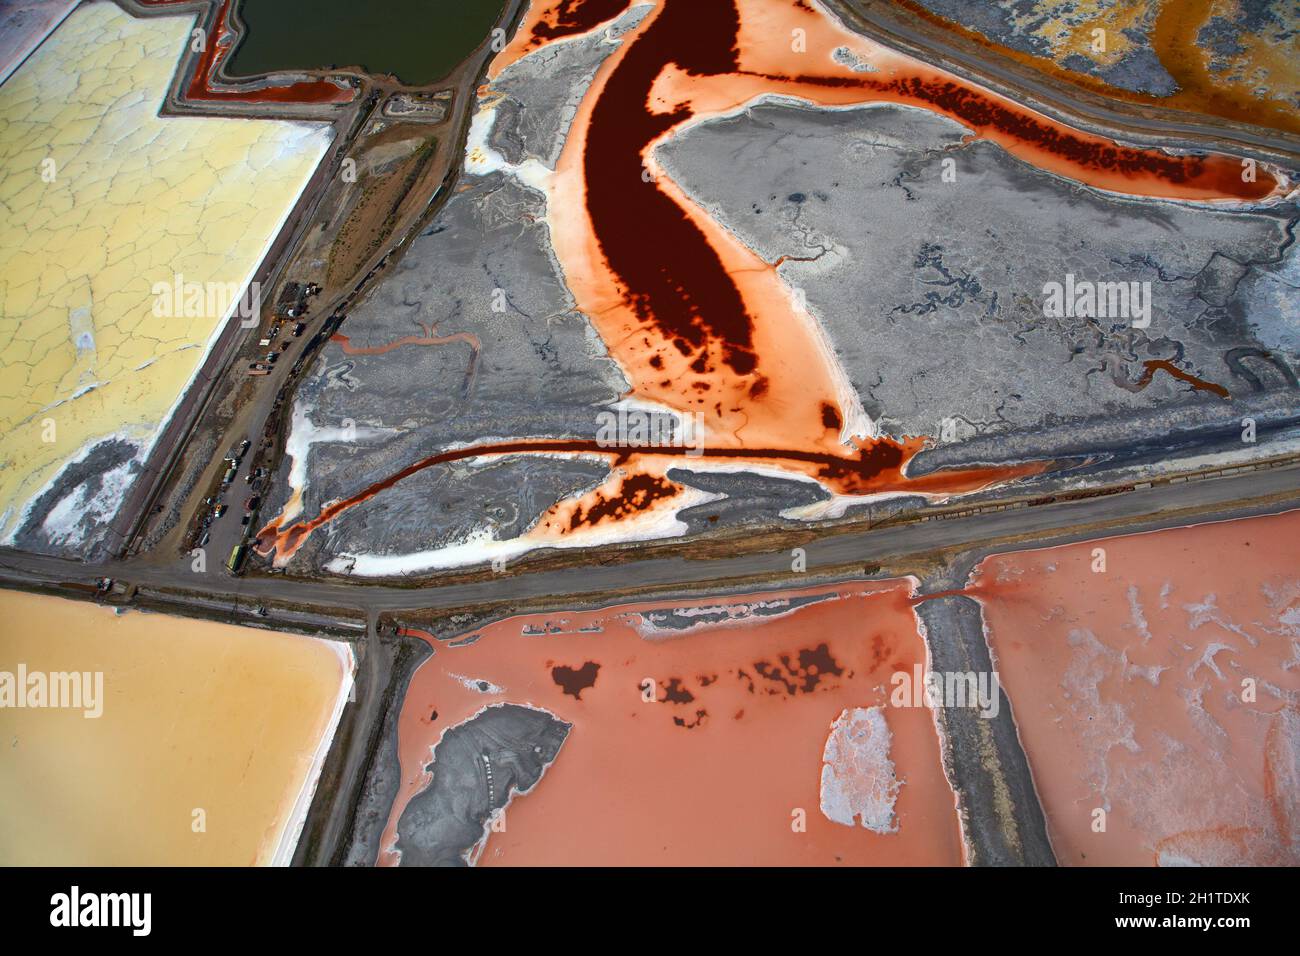 Bunten Algen in Salz Verdampfung Teichen, Redwood City, San Francisco Bay, San Francisco, Kalifornien, USA - Antenne Stockfoto